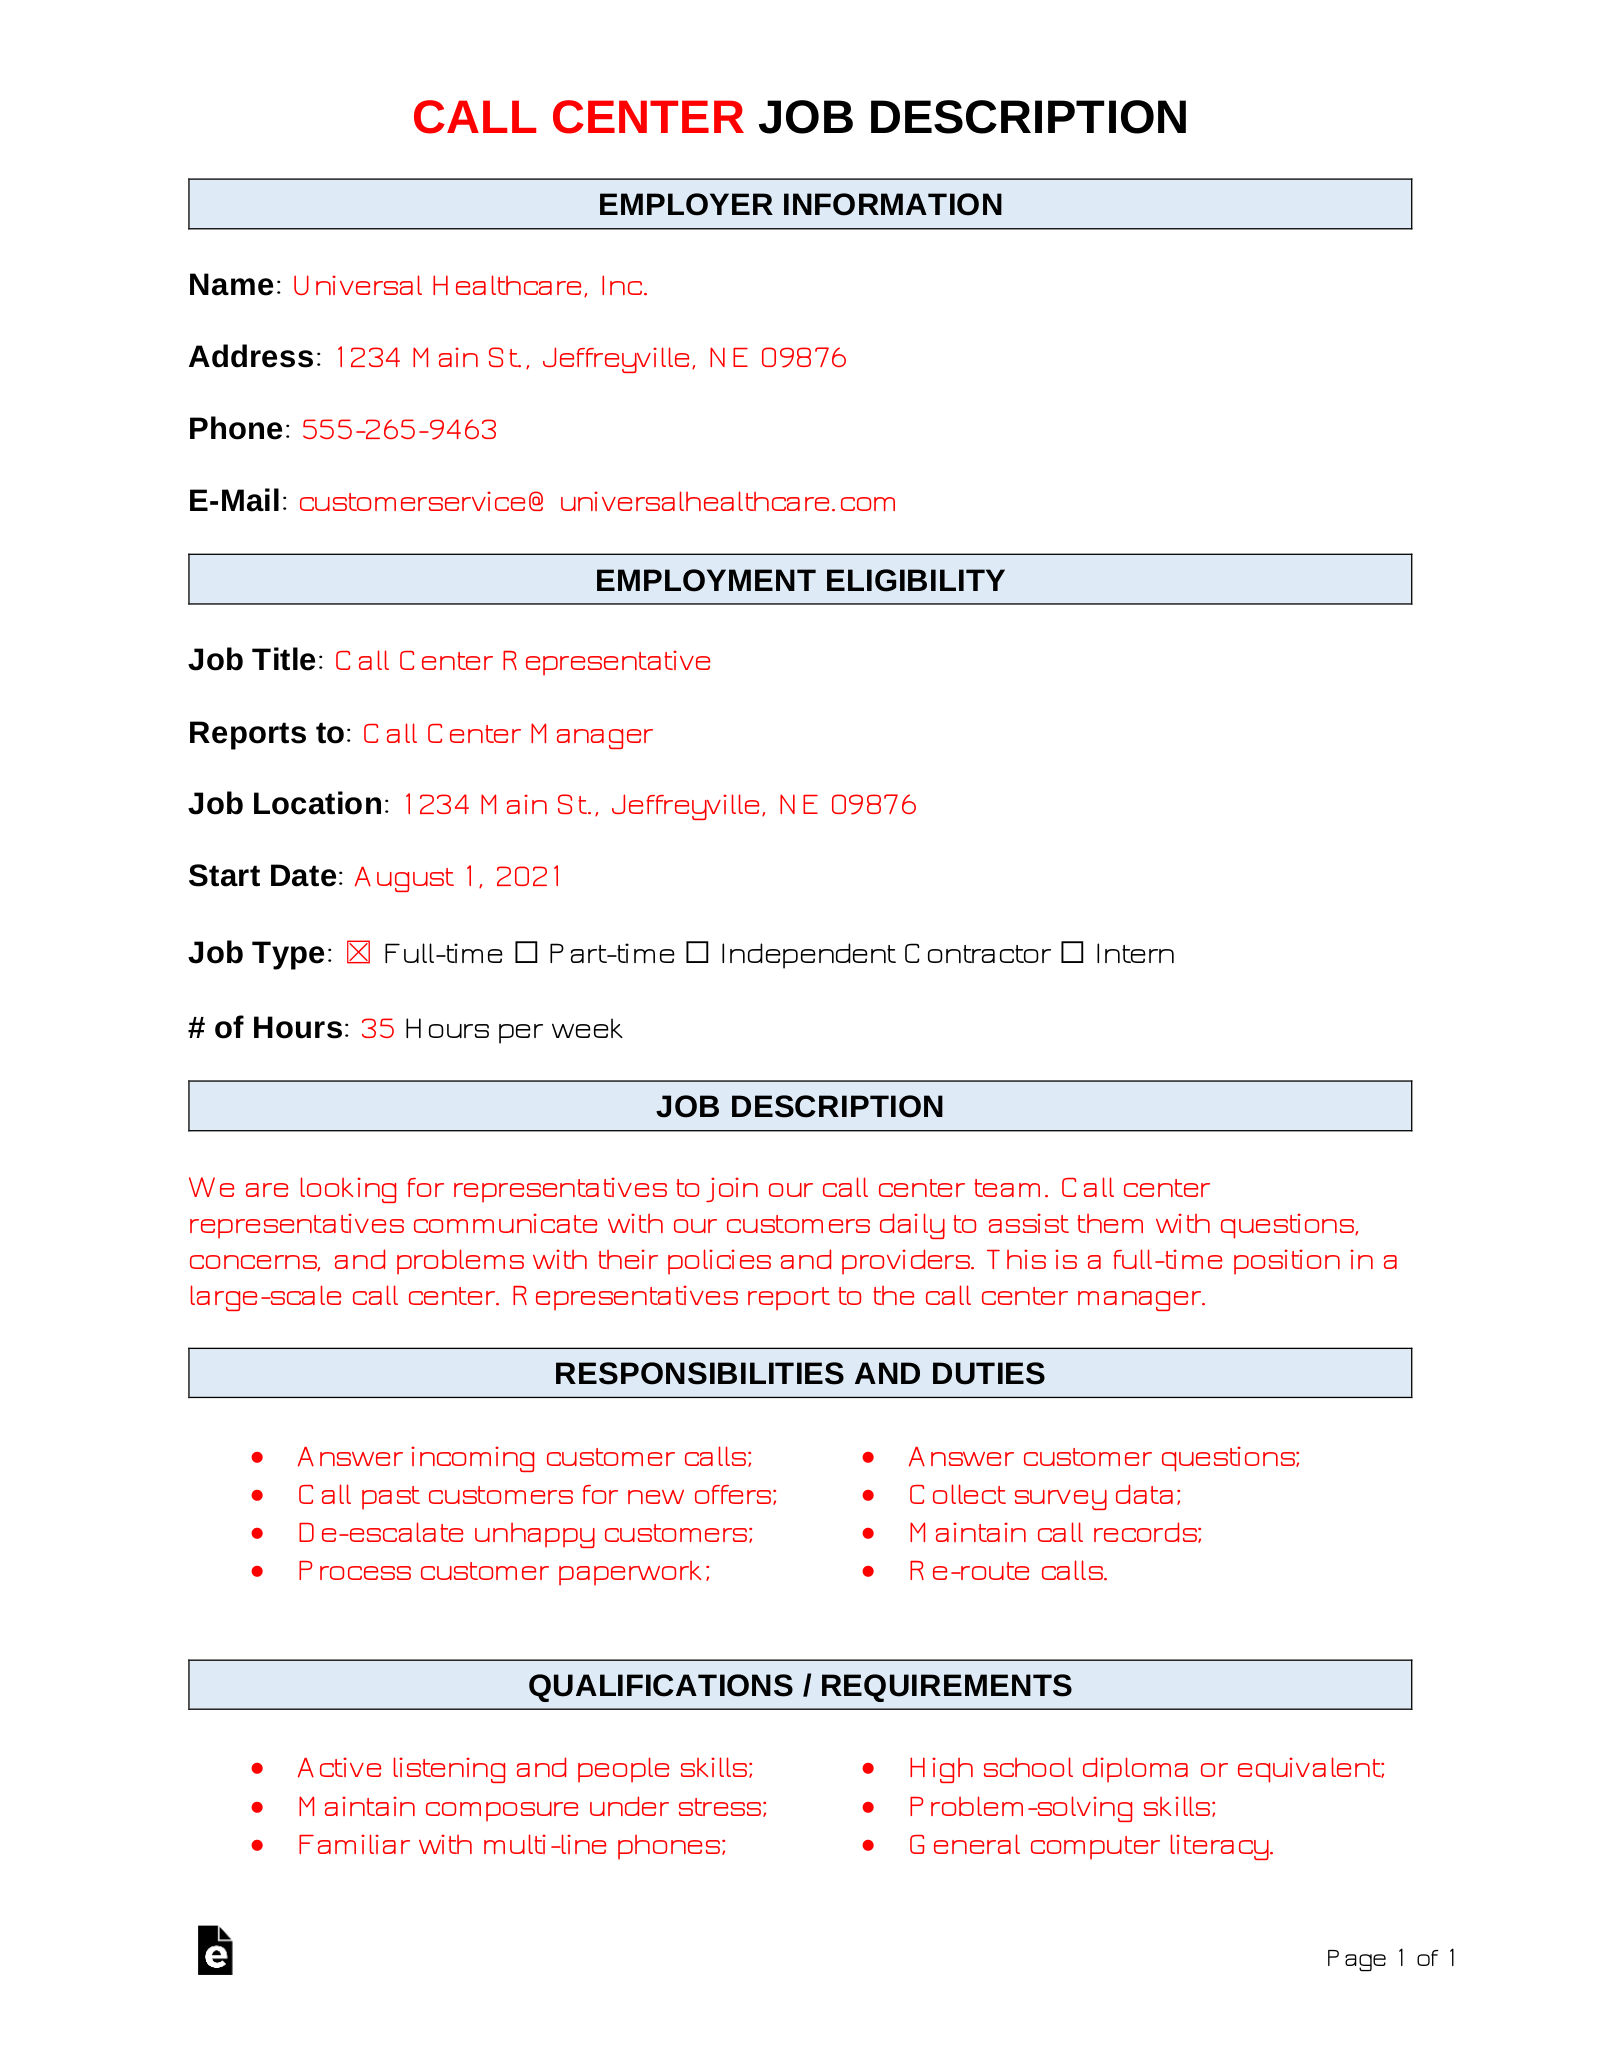 Call Center Job Description Template | Sample